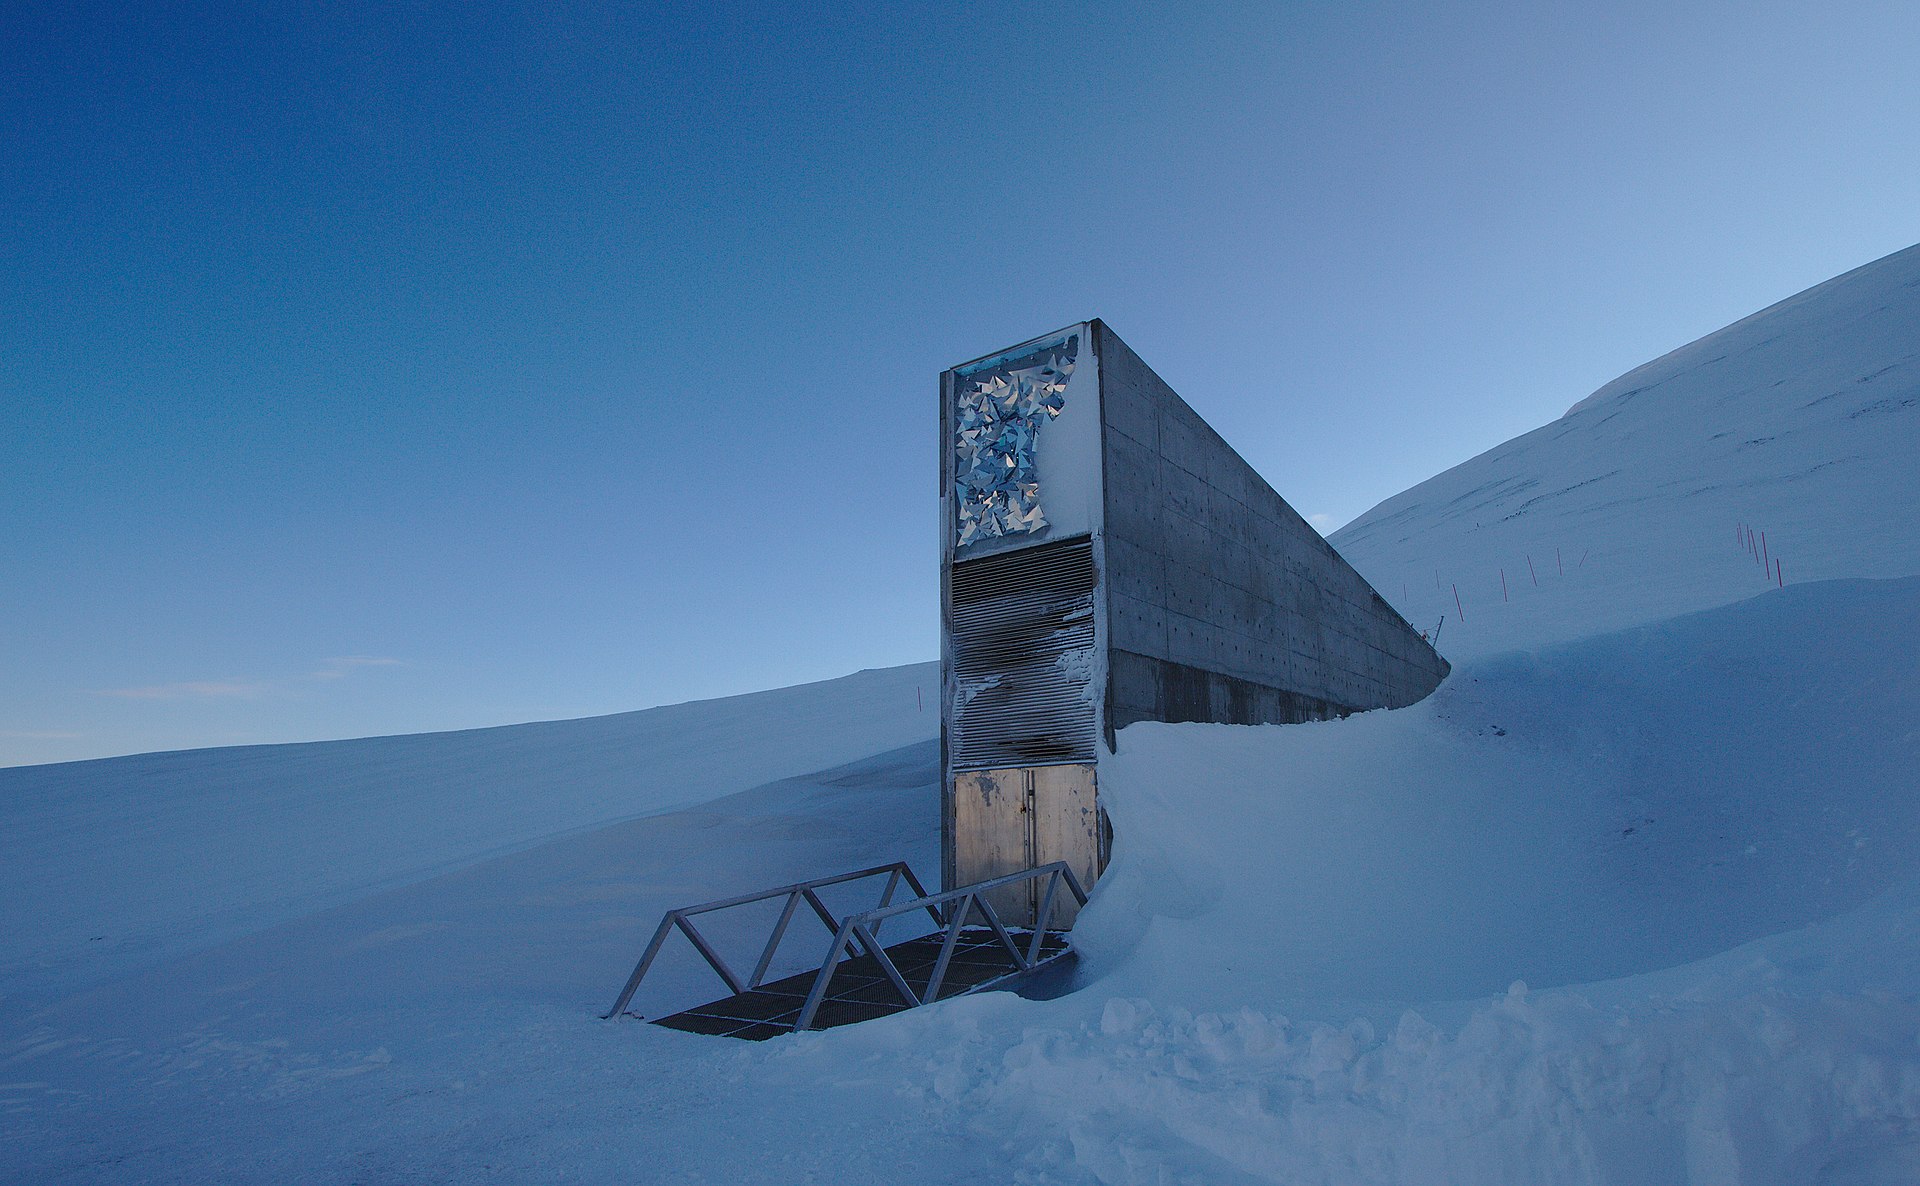 Svalbard Global Seed Vault in Norway.